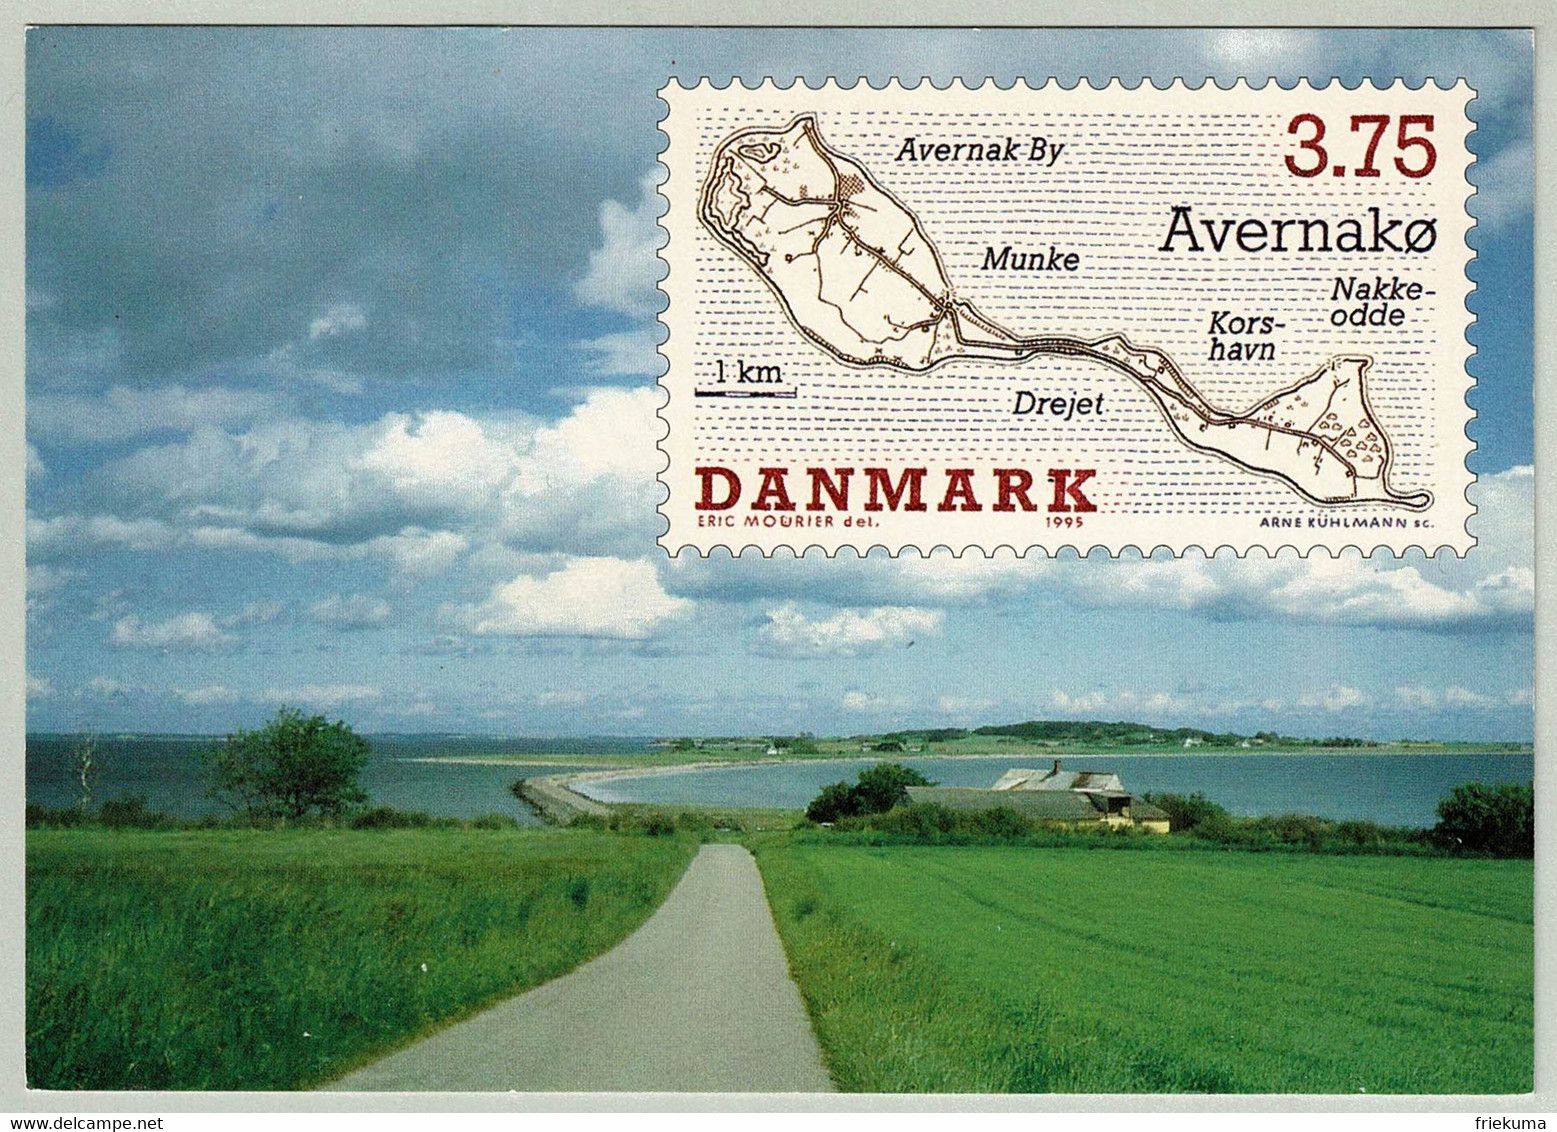 Dänemark / Danmark 1995, Ganzsachenkarte Avernako, Insel / Ile / Island - Inseln